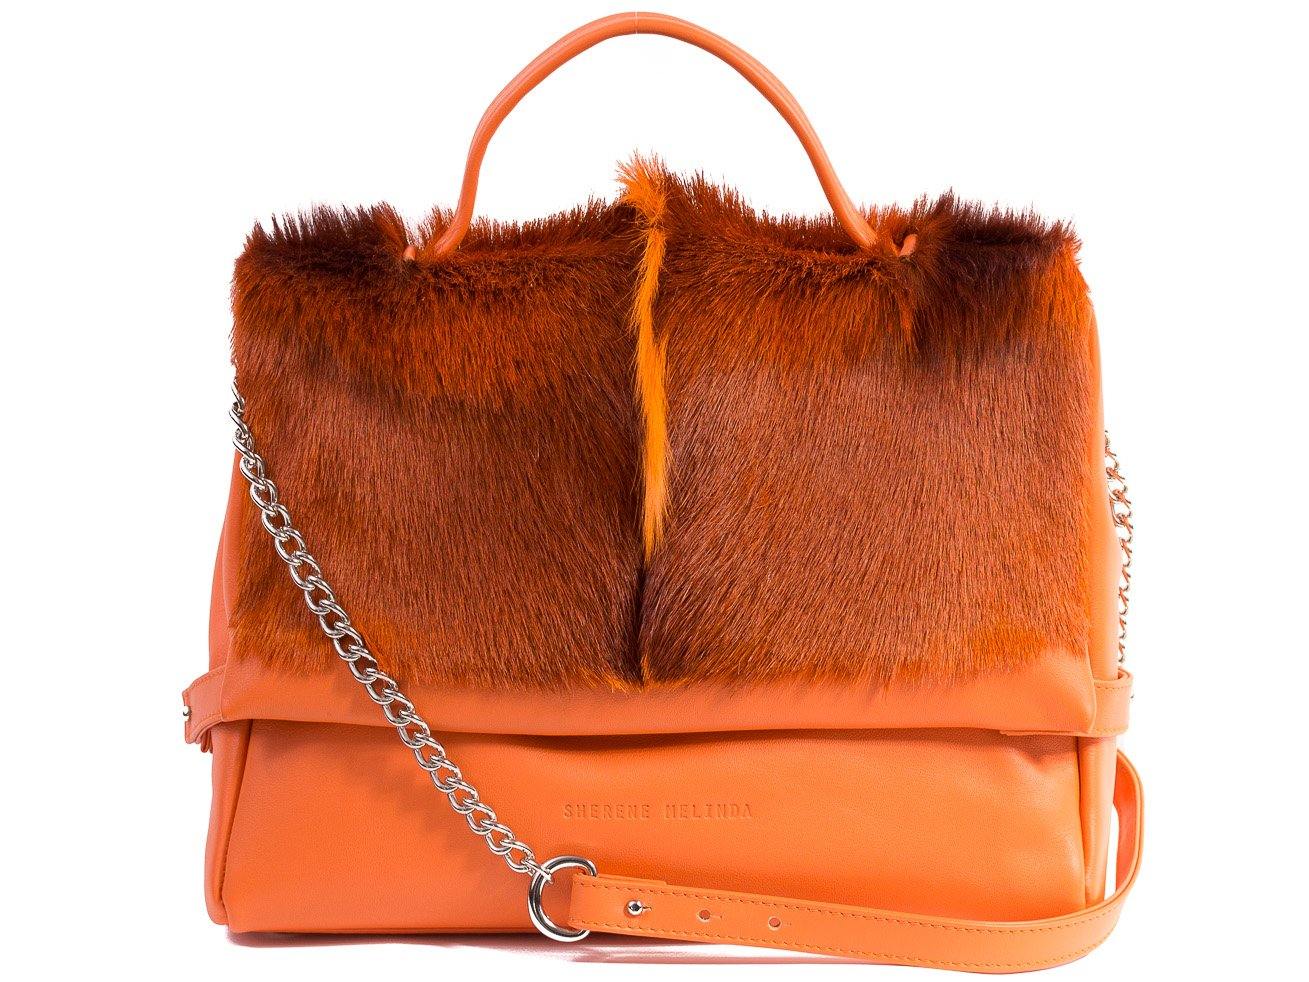 sherene melinda springbok hair-on-hide orange leather smith tote bag fan front strap